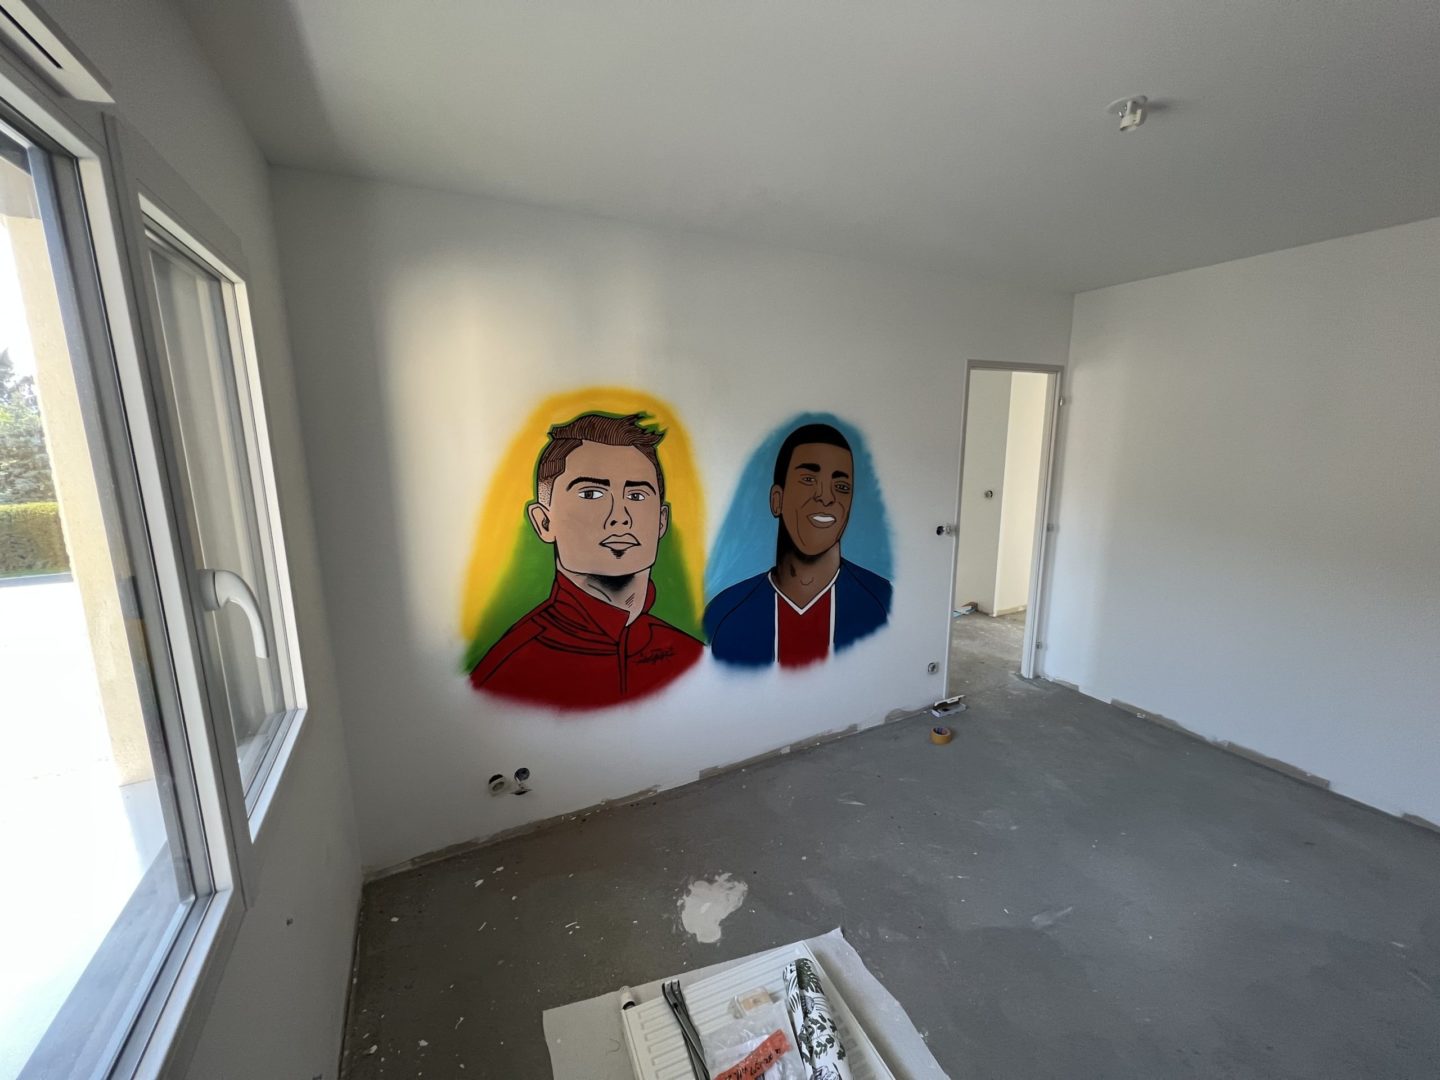 Réalisation d'une décoration graffiti d'une chambre d'enfant avec 2 portrait de footballeurs: cristiano ronaldo et kylian m. bappé par l'artiste Eazy One dans la région de Genève.